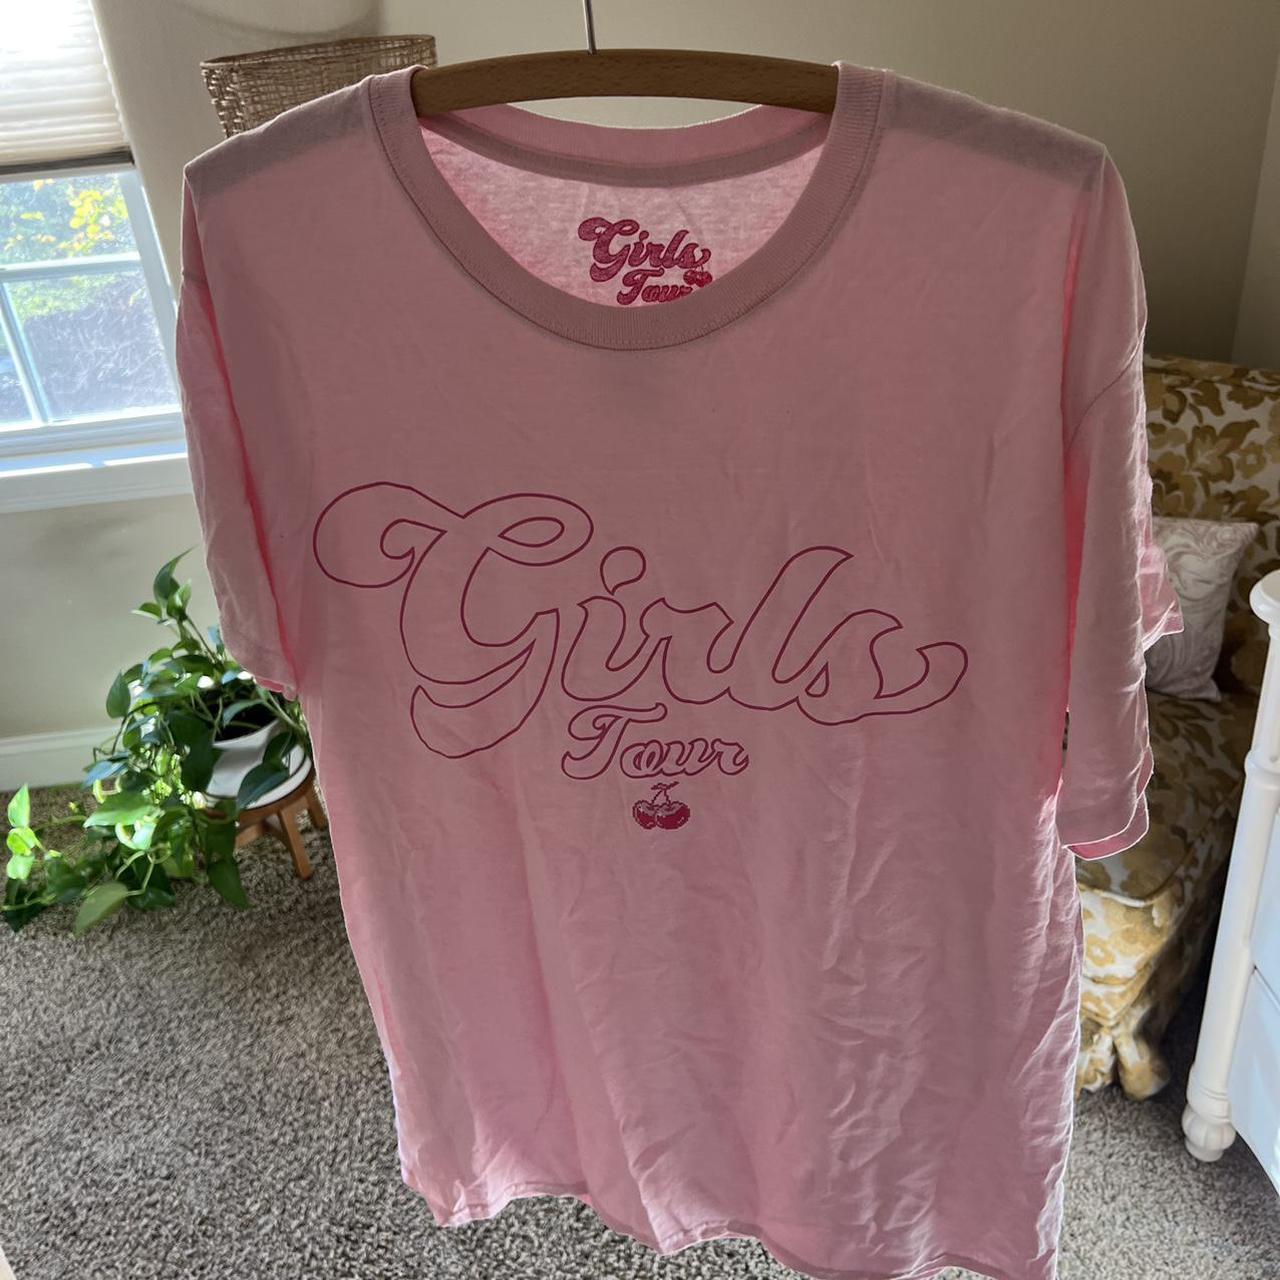 Girls Tour Women's T-shirt (4)